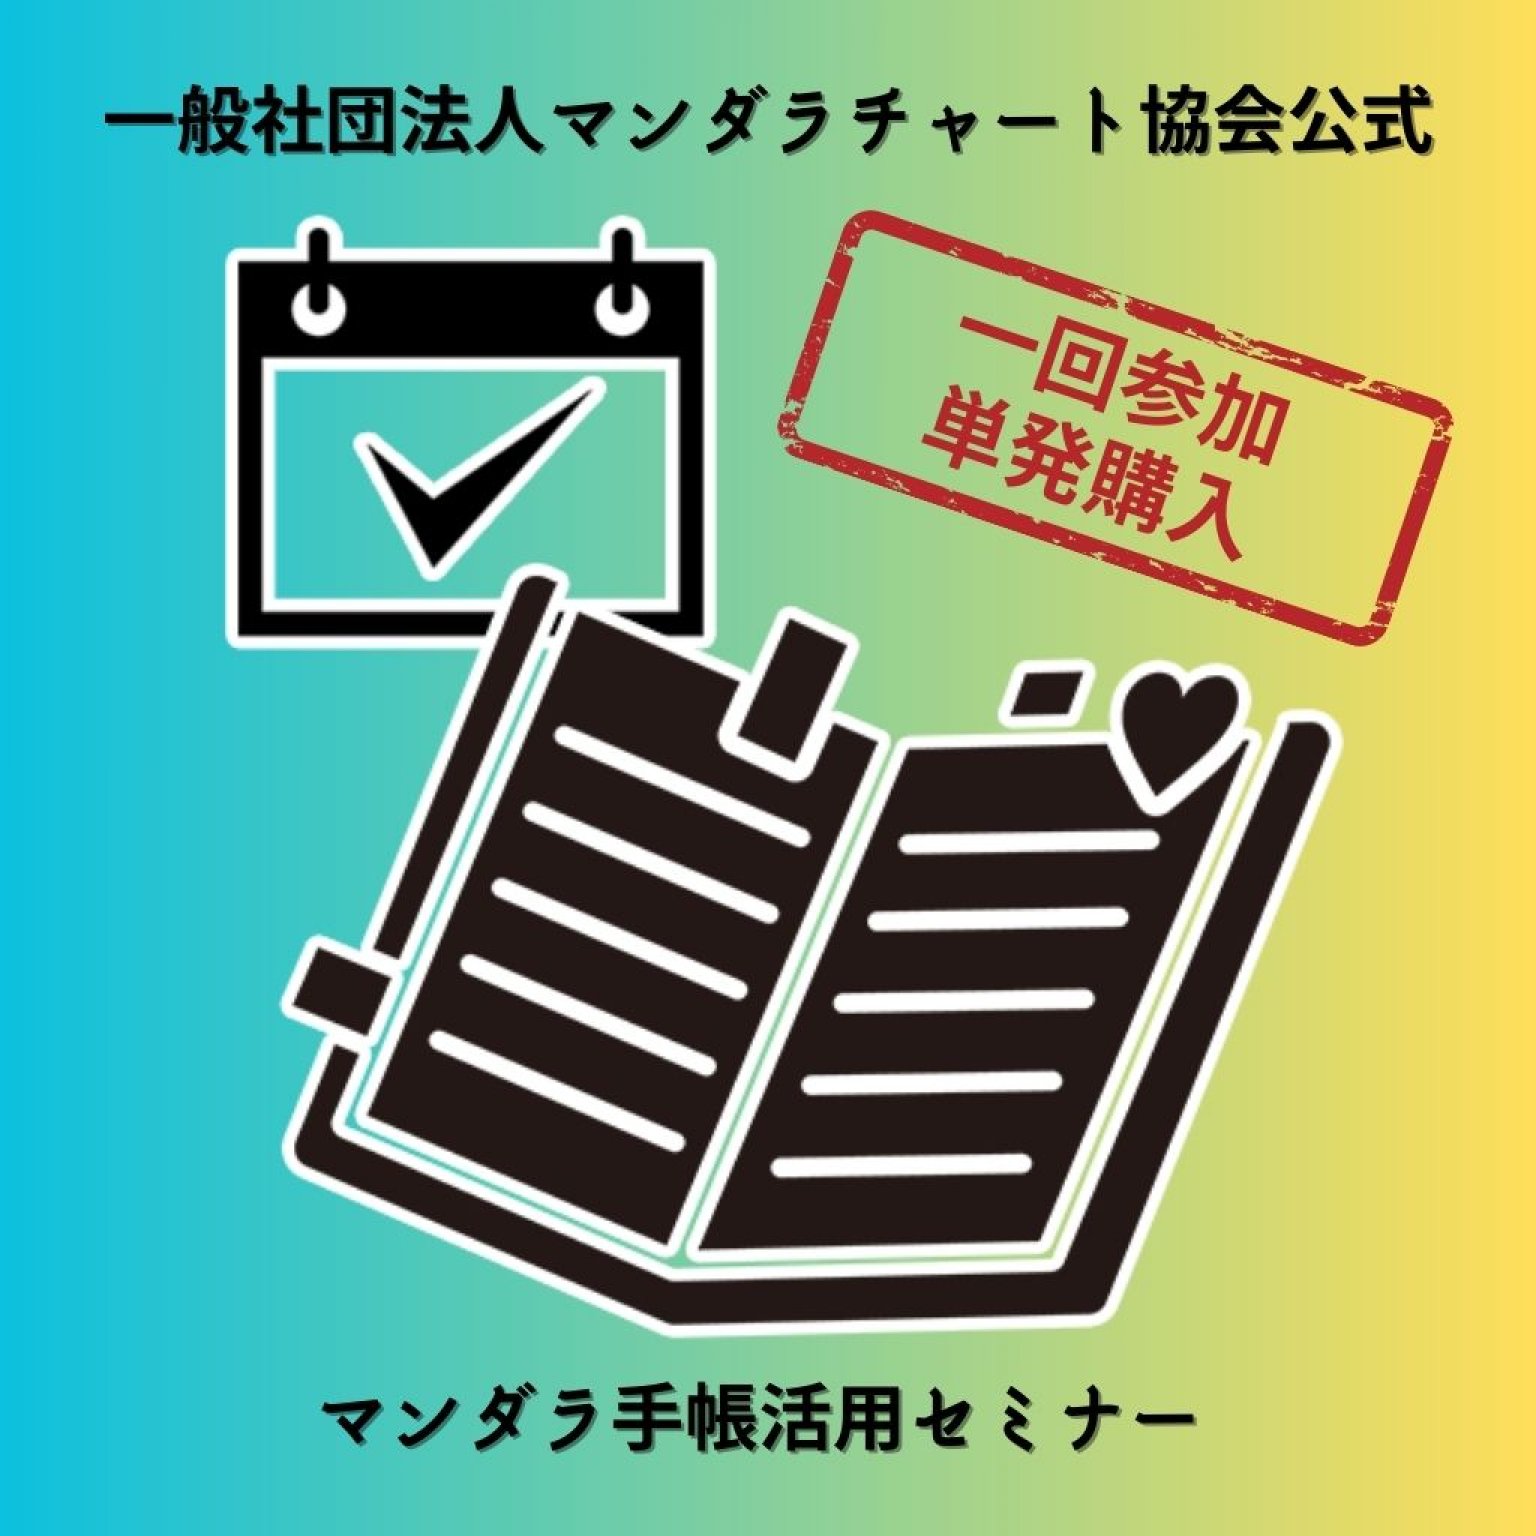 【単発購入】マンダラ手帳活用セミナー/マンダラチャート協会公式